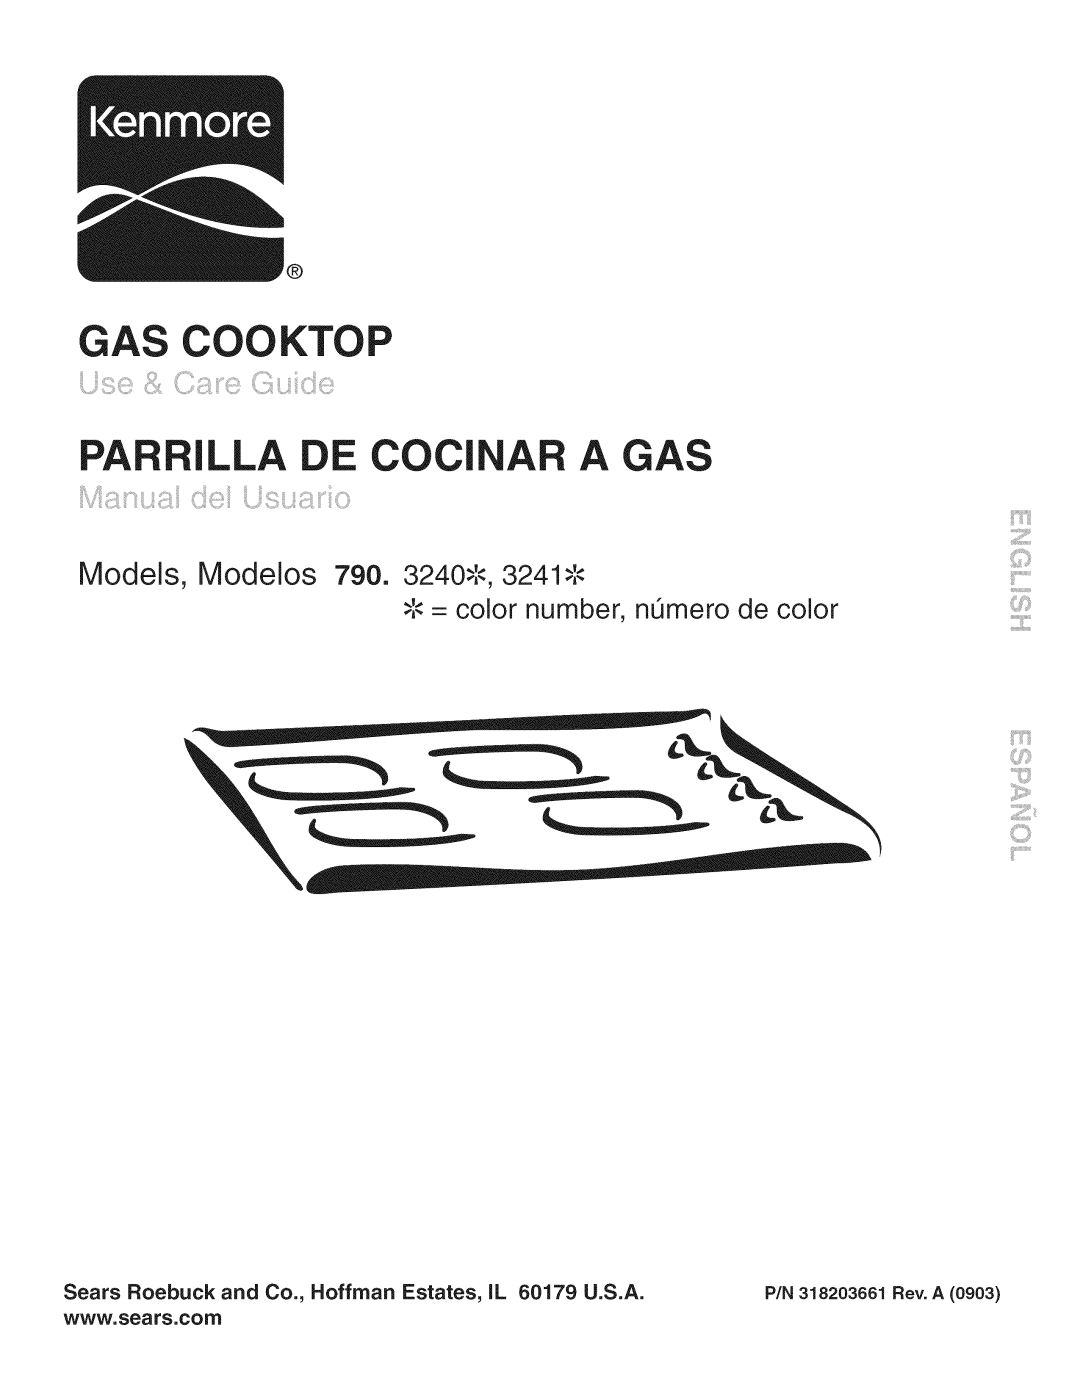 Kenmore 790.324 manual E COCl A A GAS, Gas Cooktop, Models, Modelos 790. 3240-,-,3241, = color number, n_mero de color 